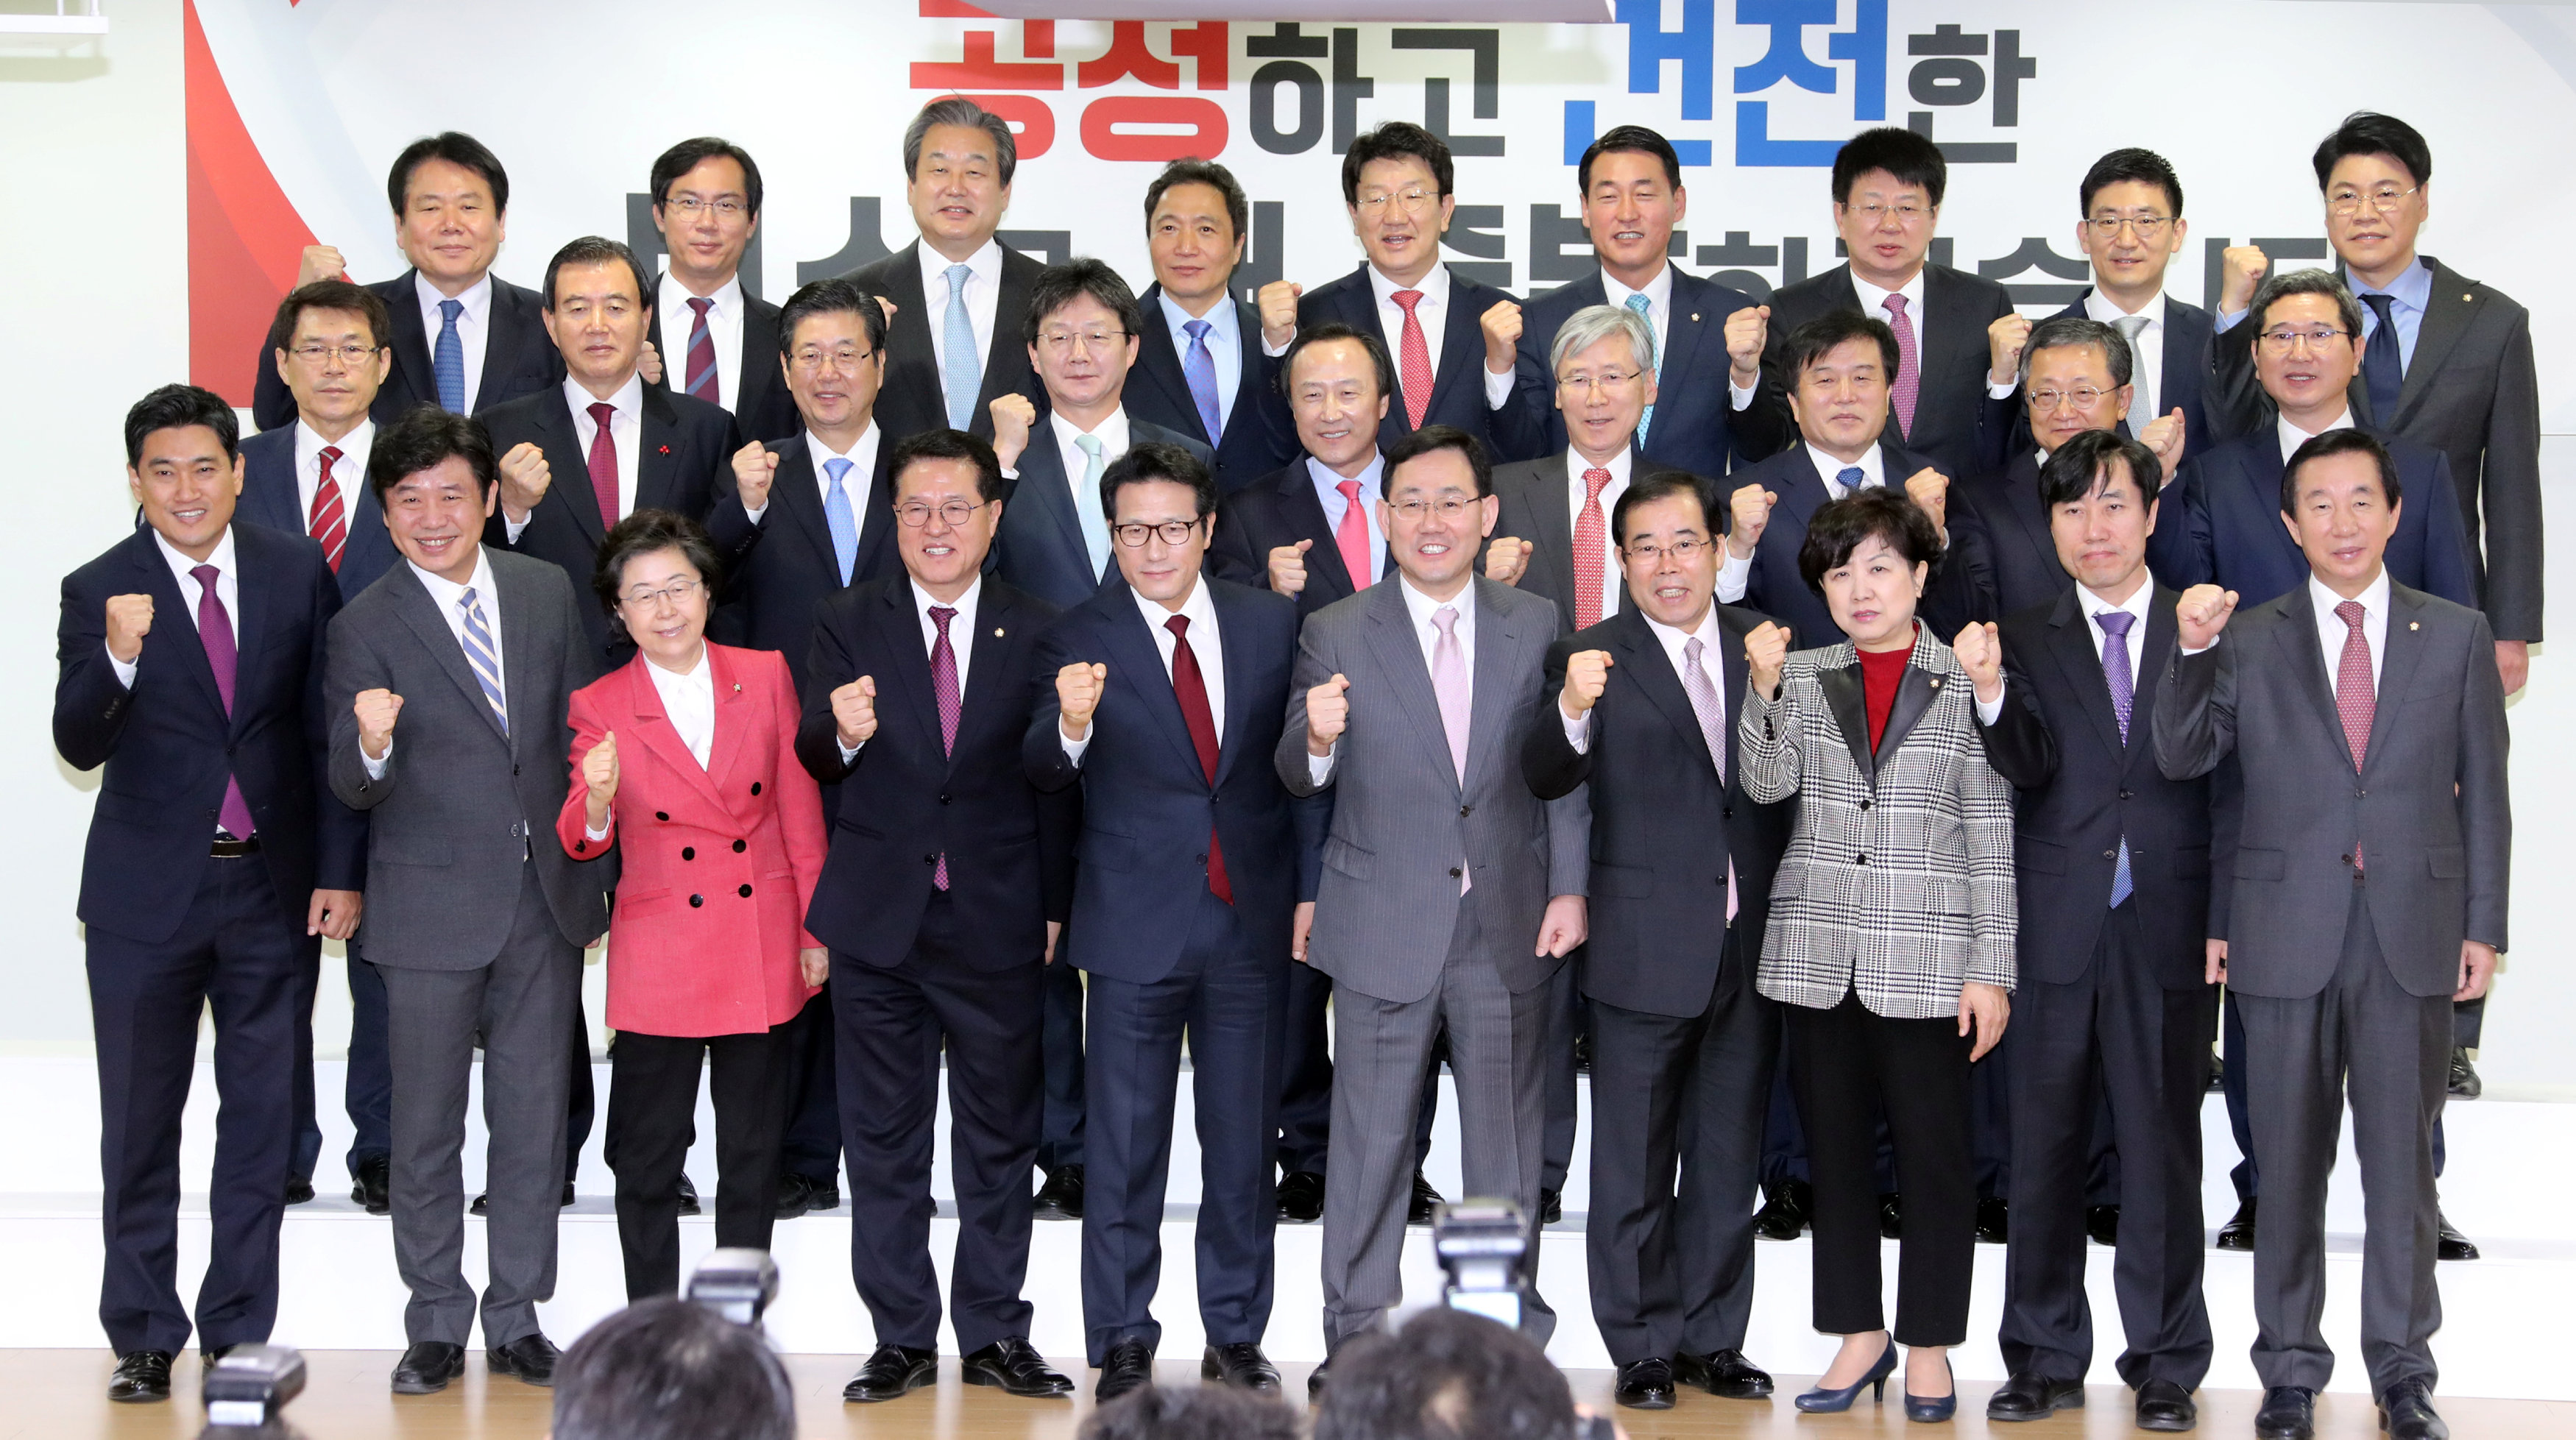 صورة جماعية لنواب الحزب الحاكم المنشقين